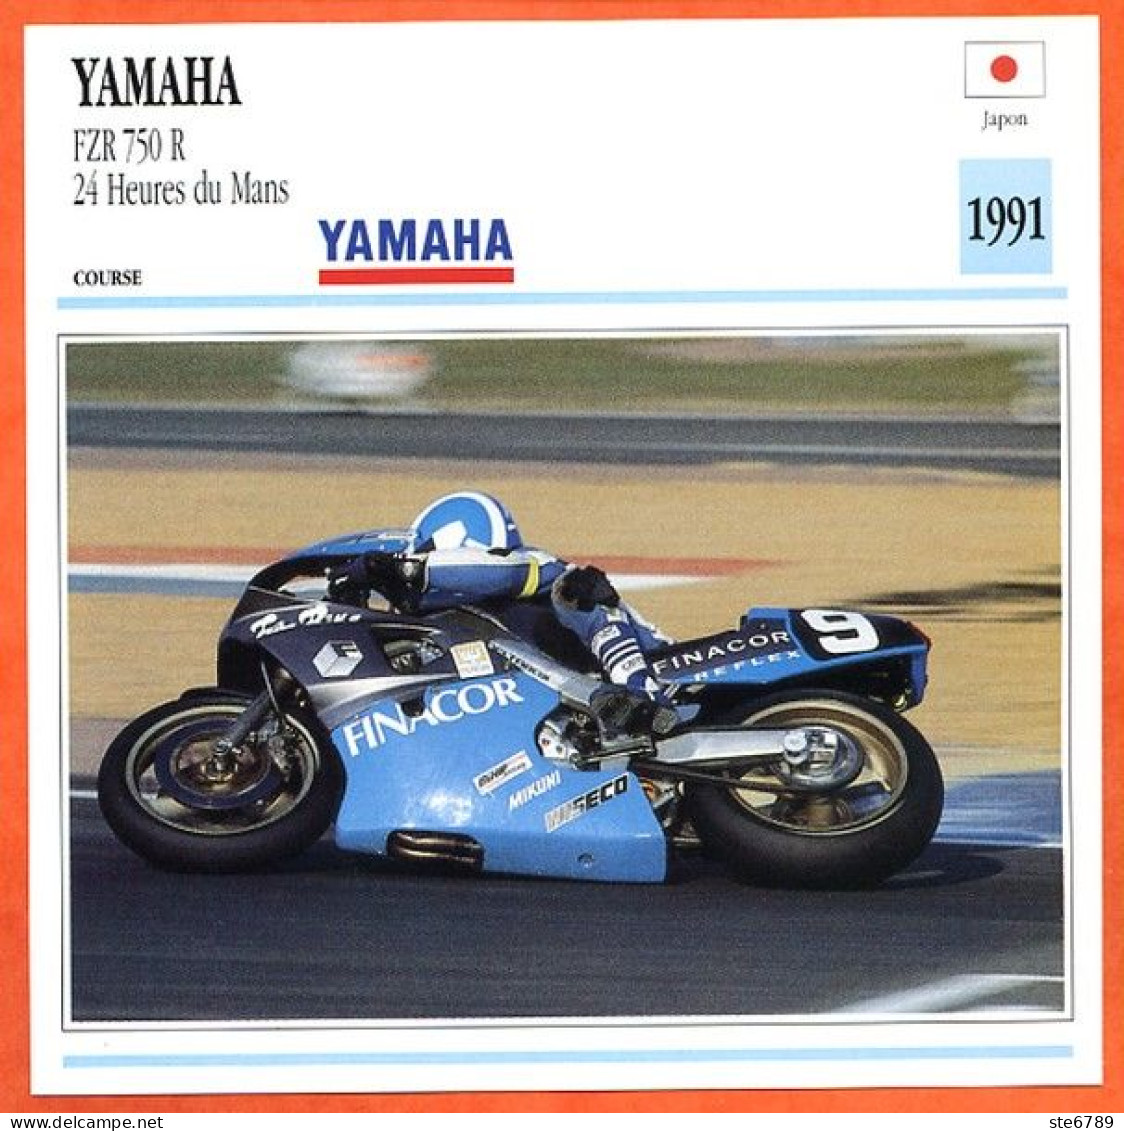 YAMAHA FZR 750 R 24 Heures Du Mans Fiche Technique Moto - Sport